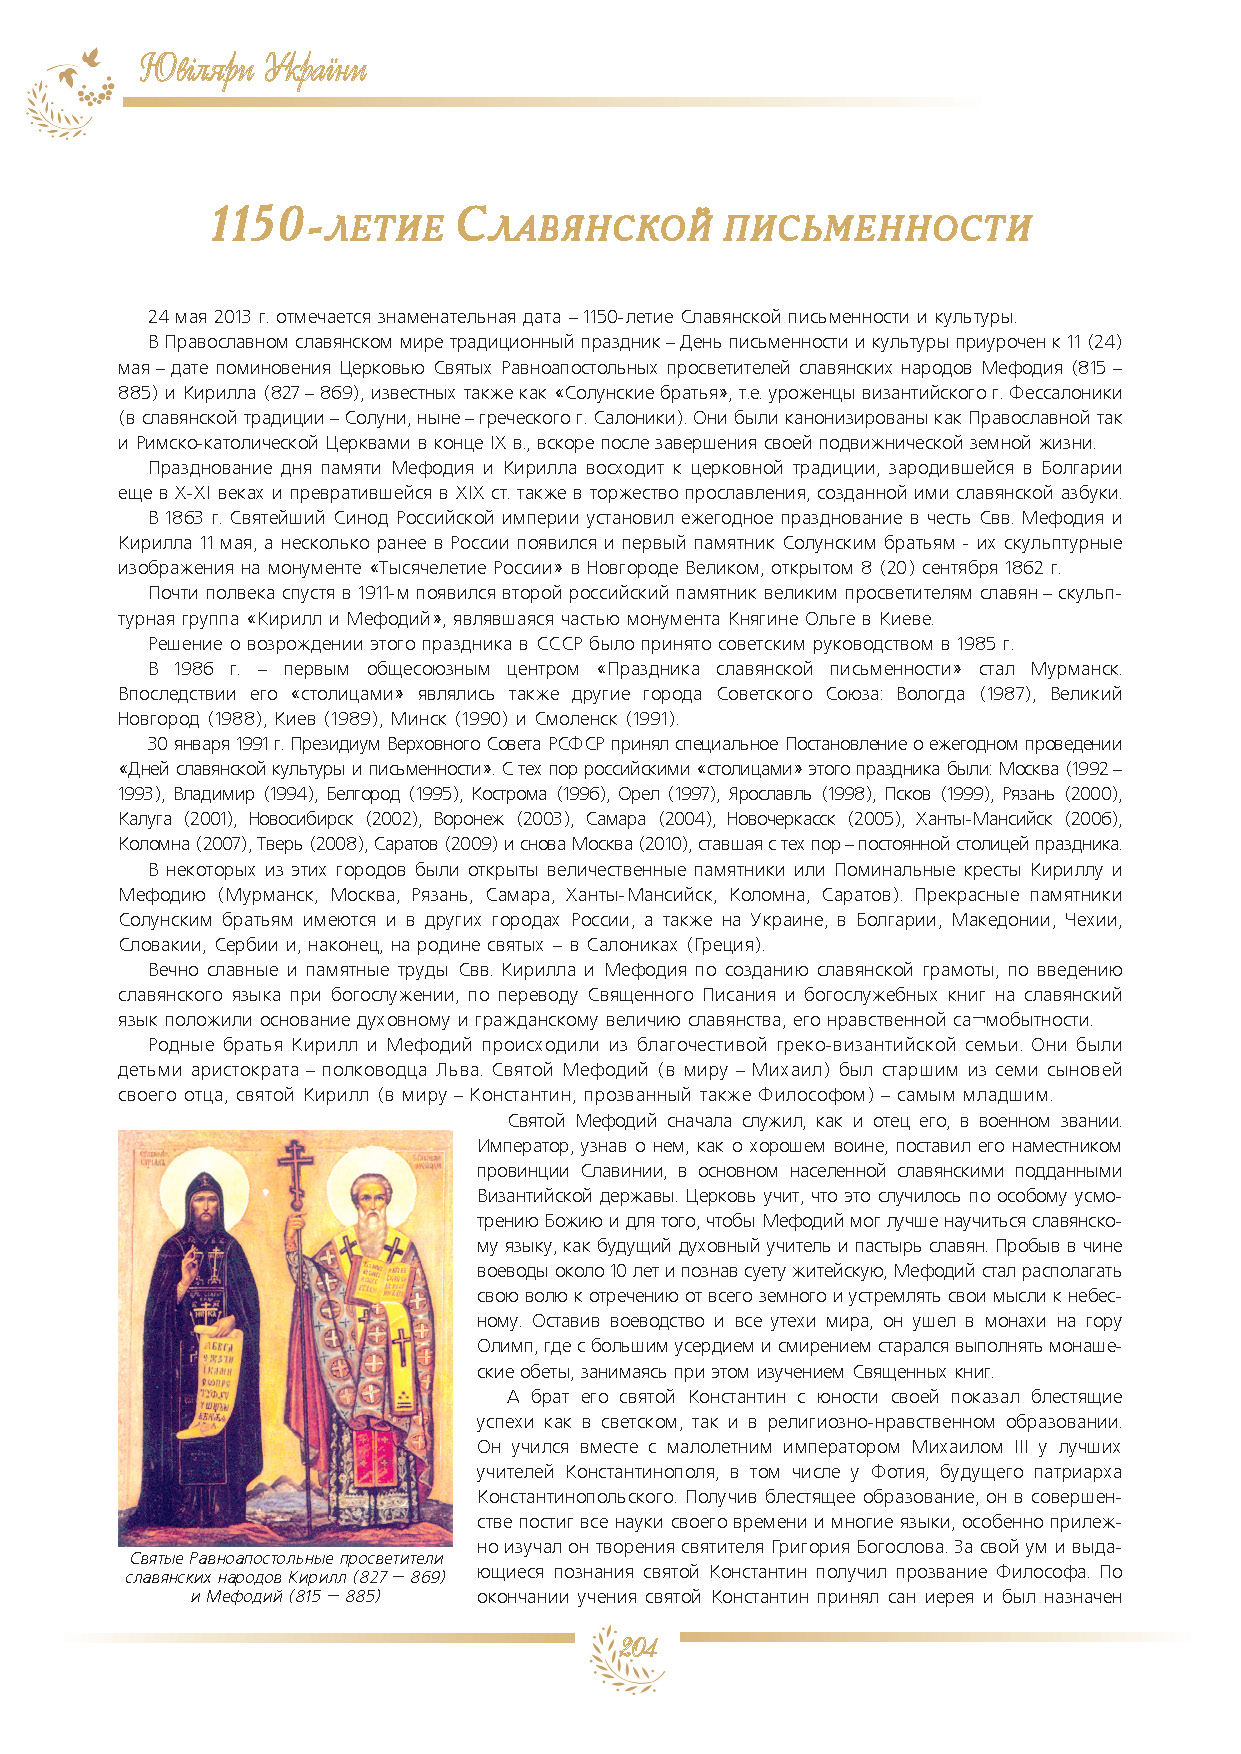 1150-летие Славянской письменности